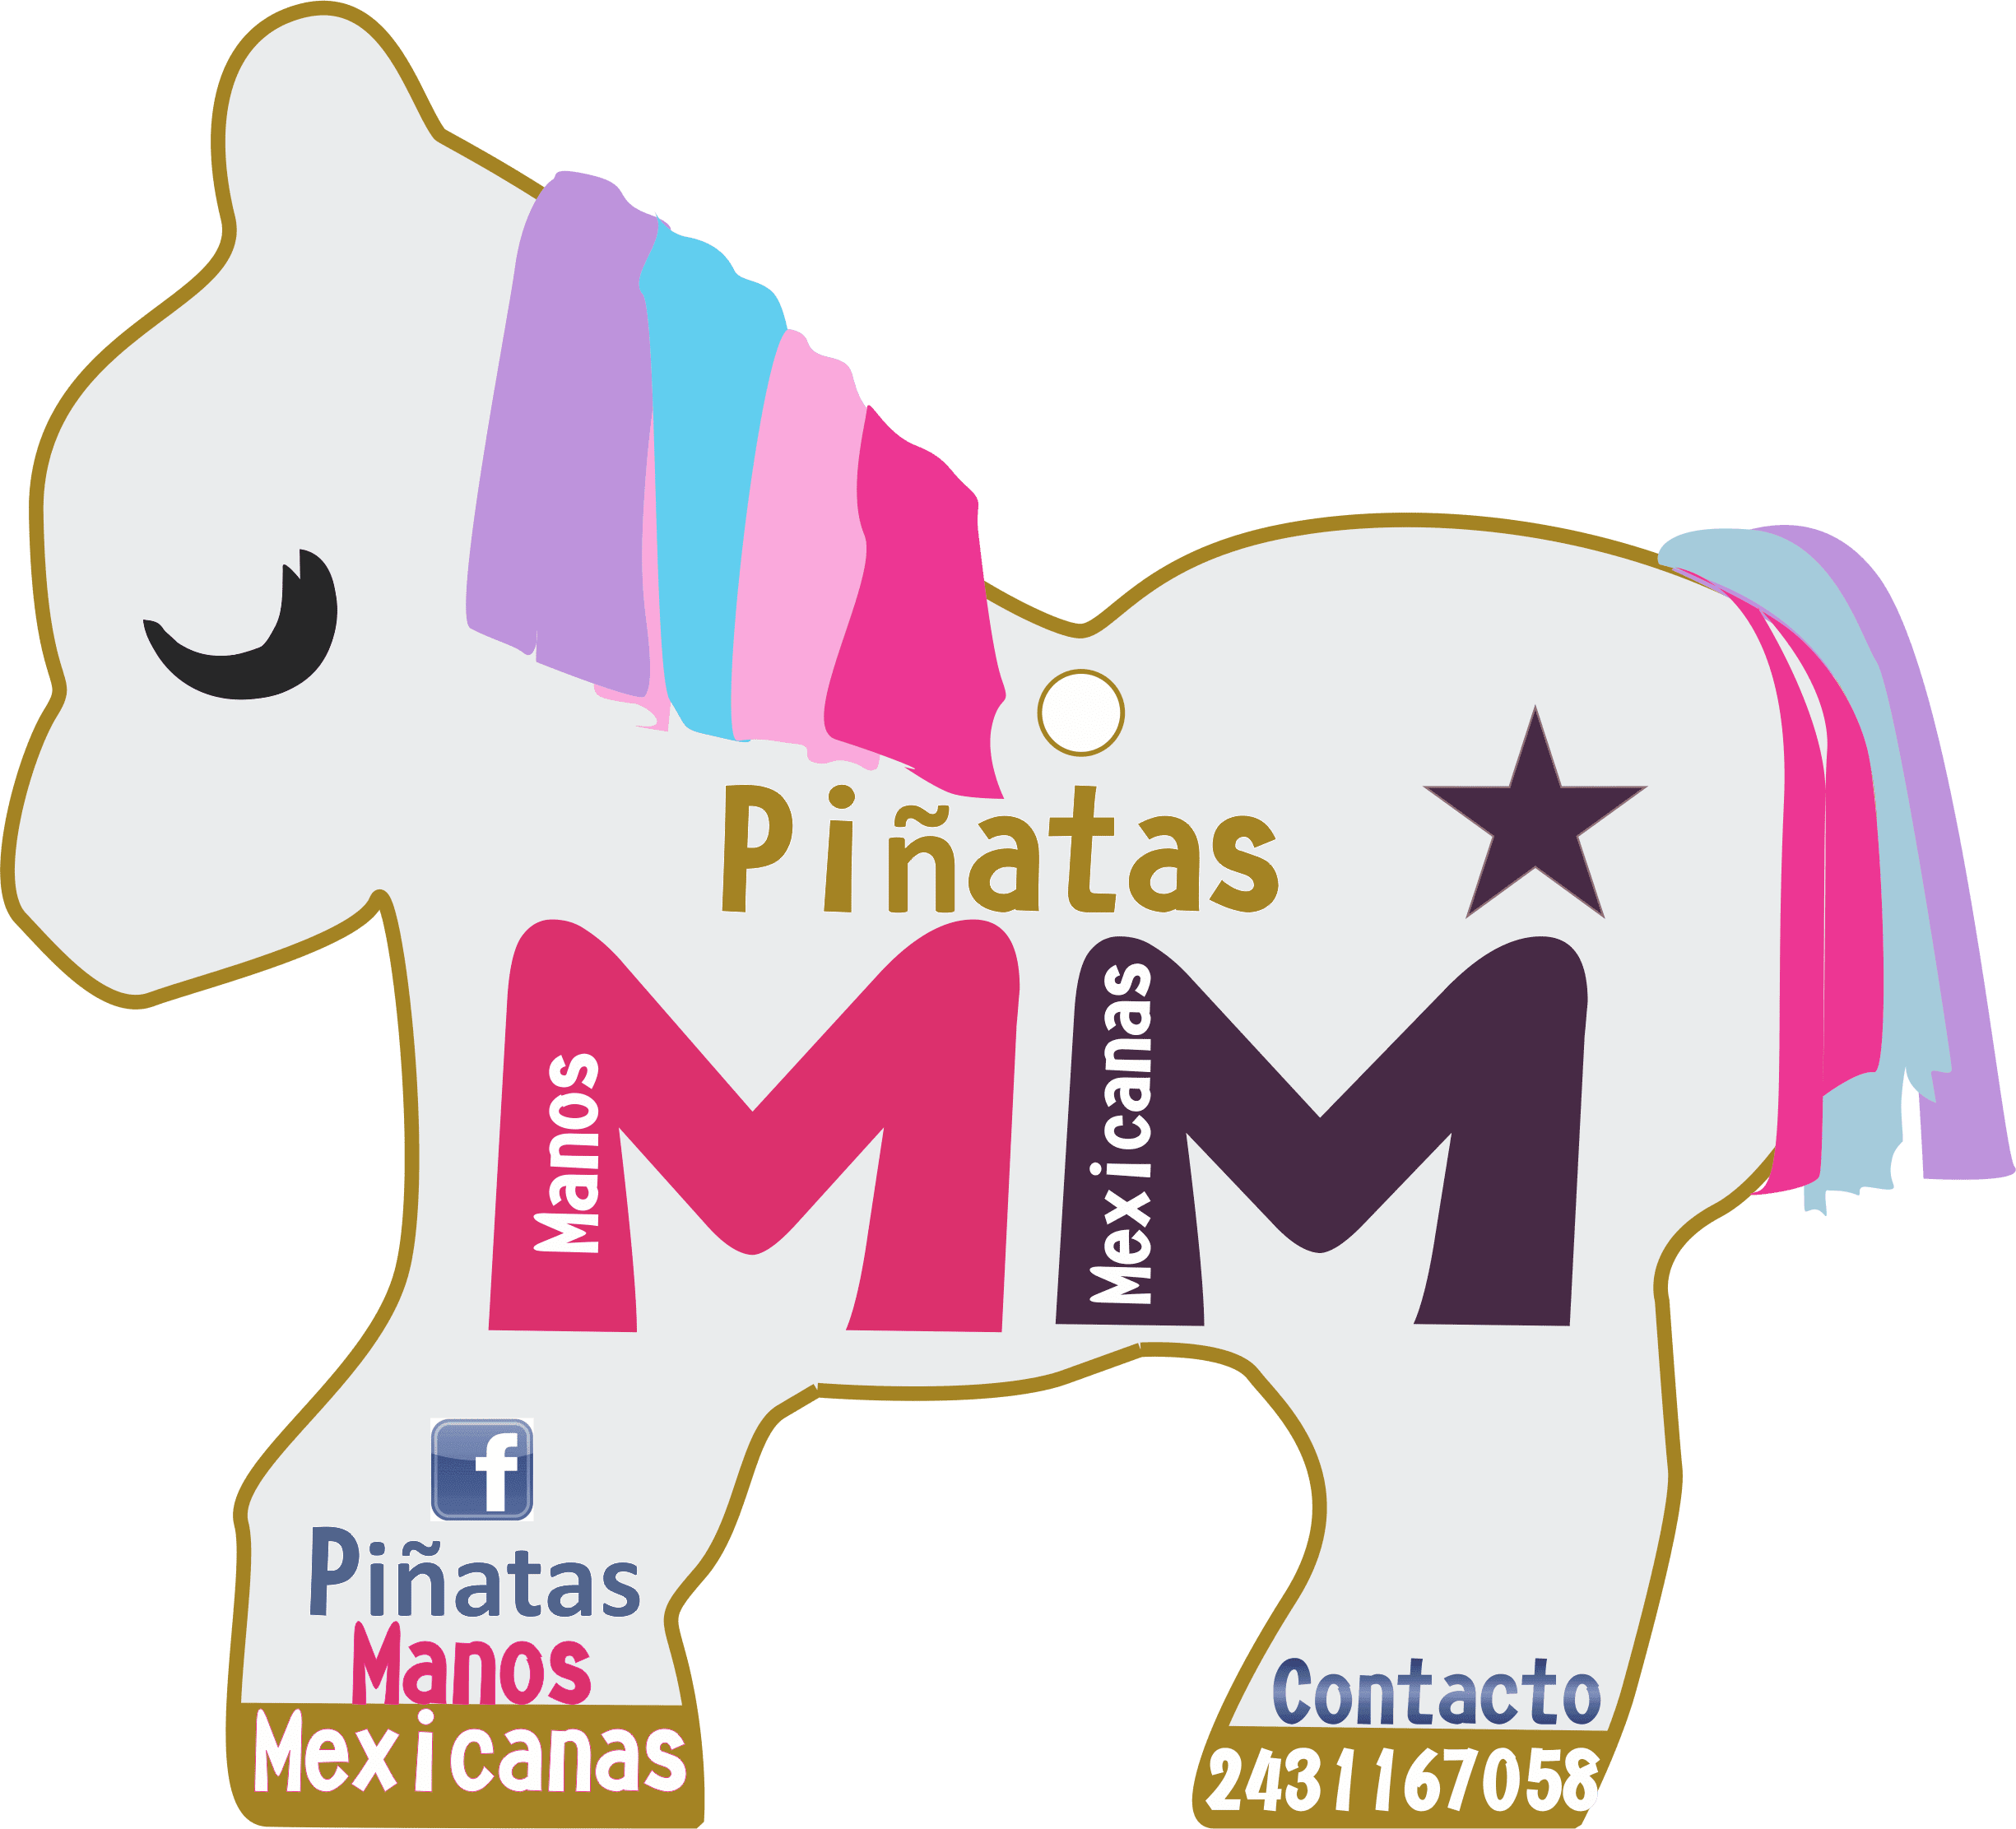 Piñatas Manos Mexicanas